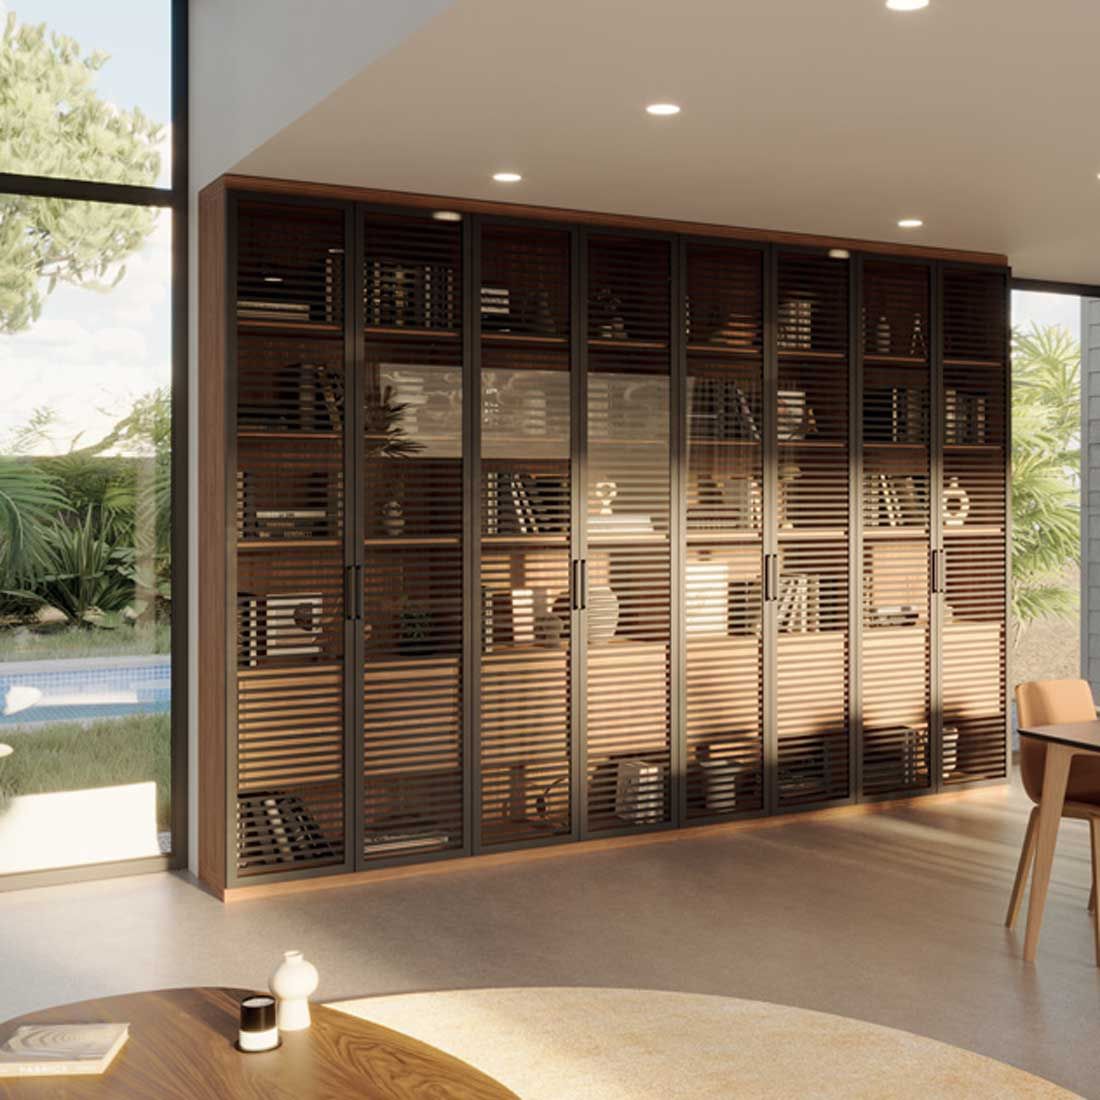 Image 3D réaliste d'un vaisselier à portes vitrées donnant sur une salle à manger.